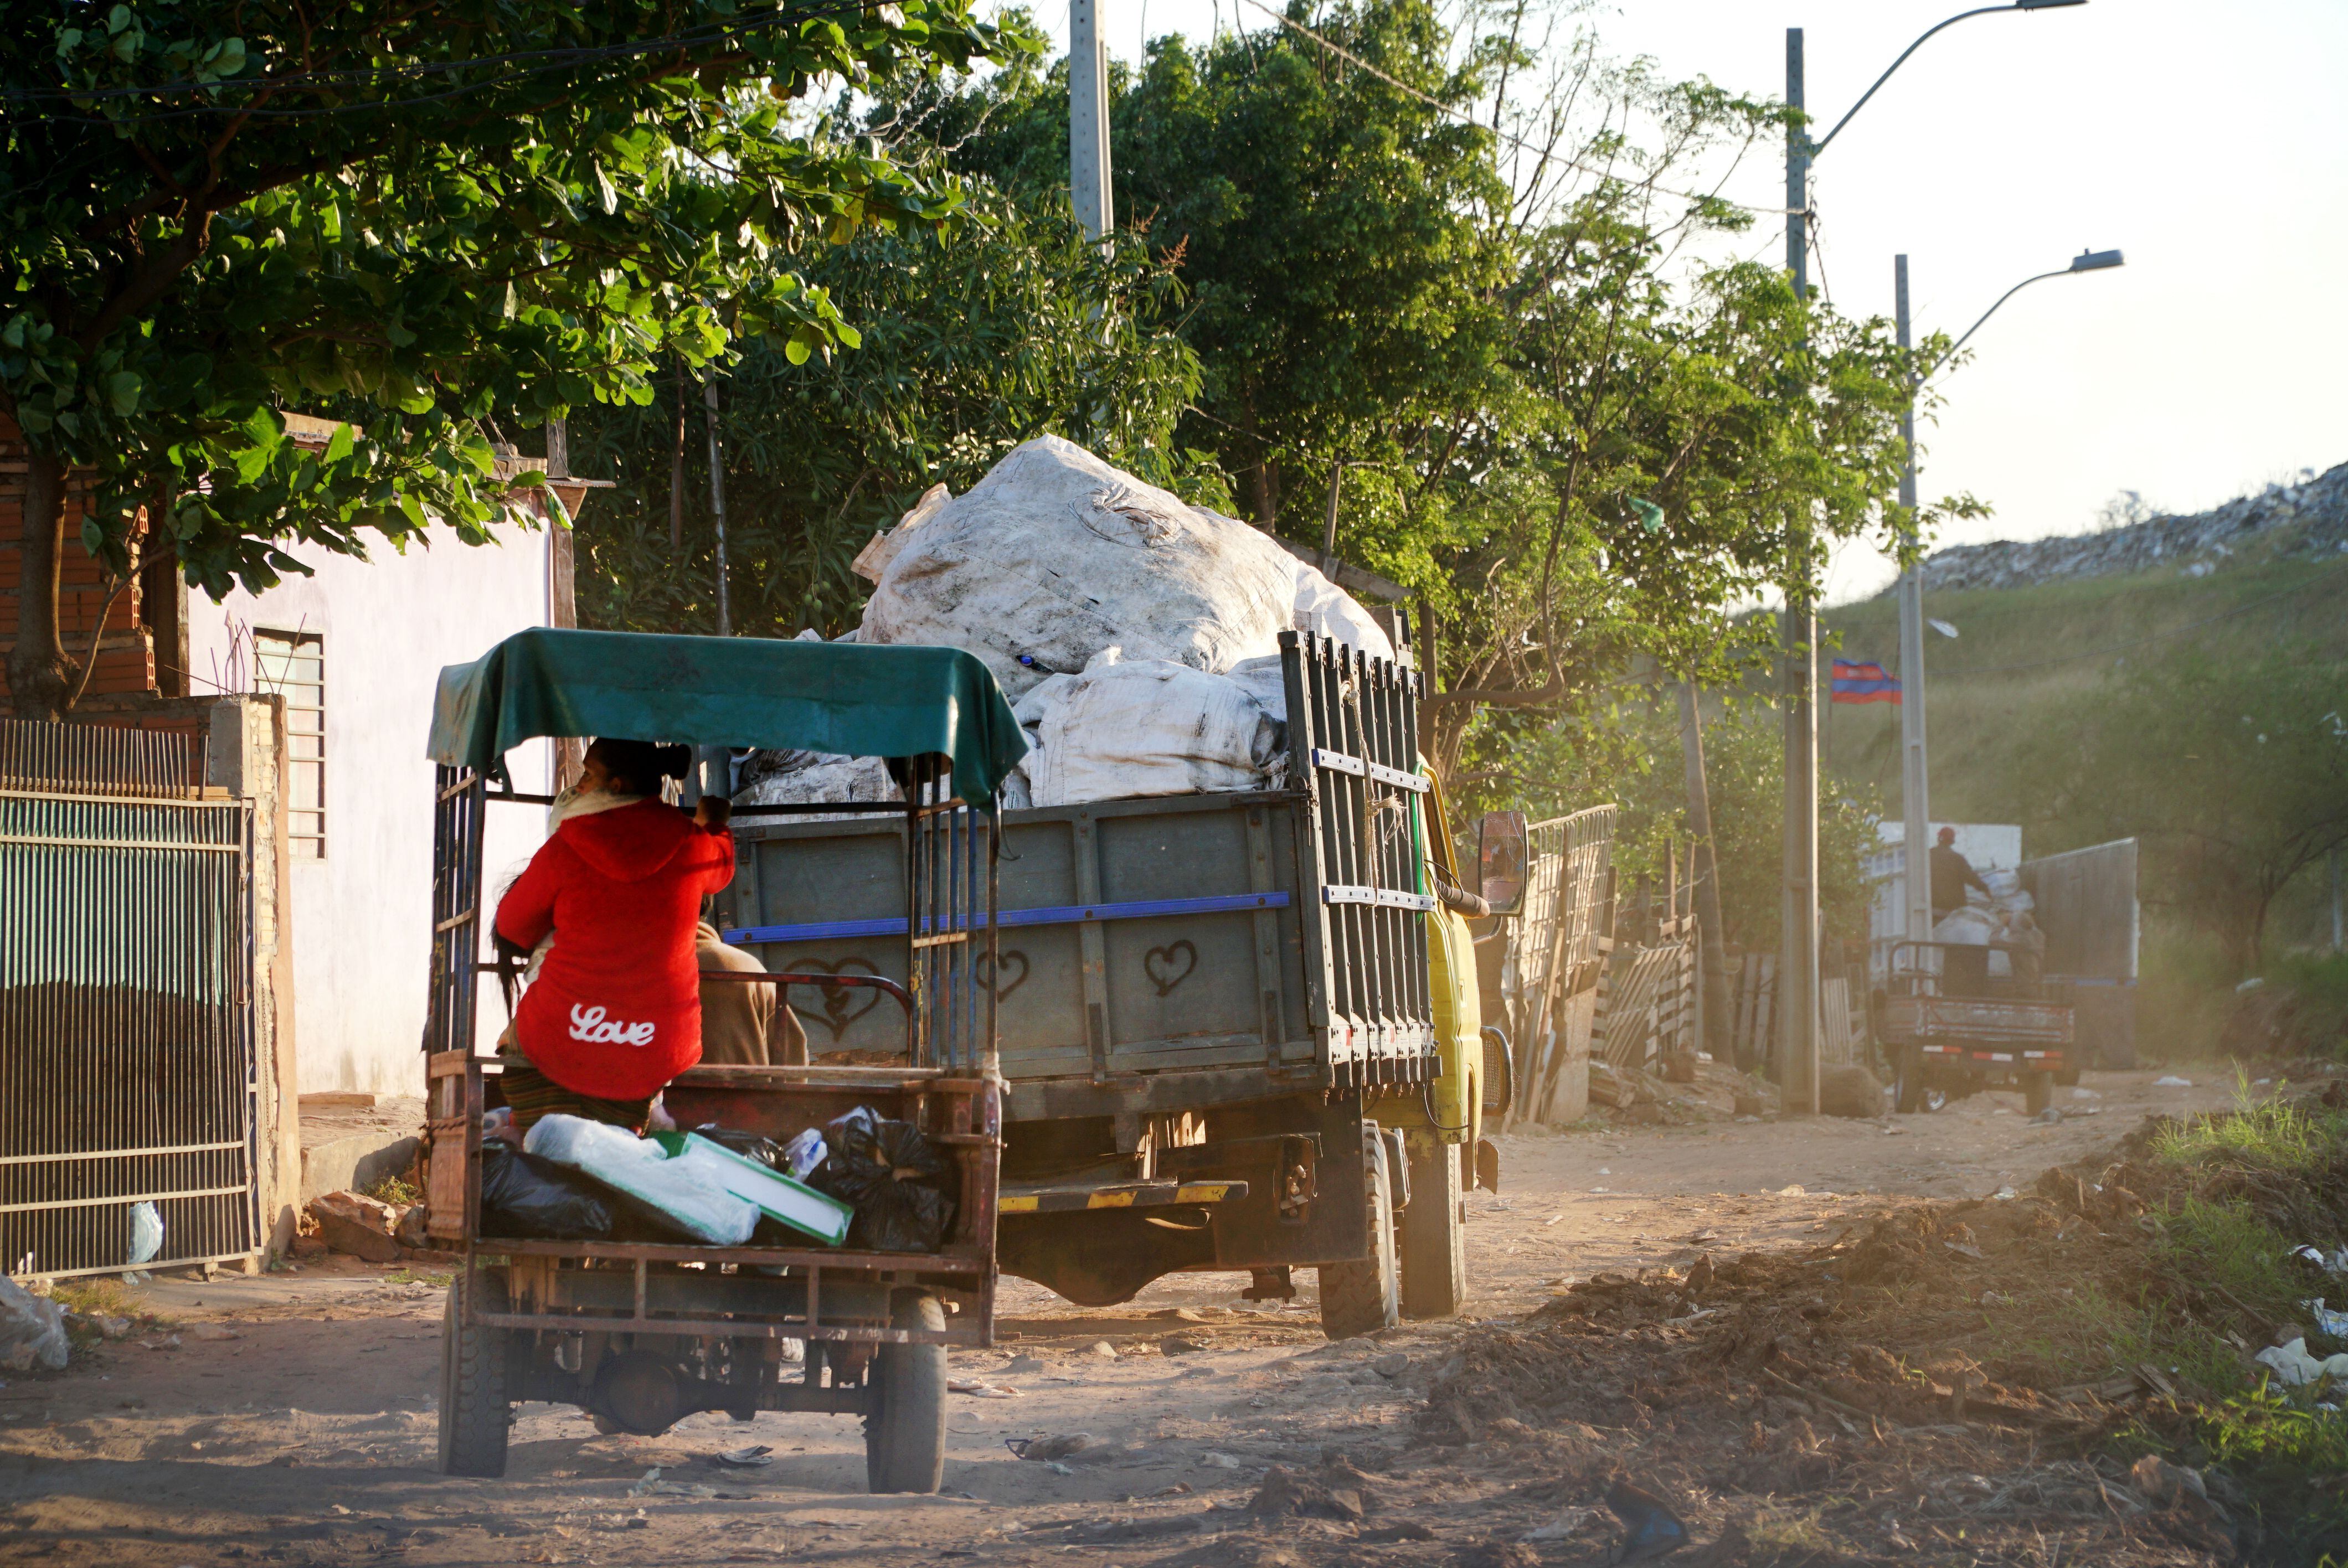 Camiones informales recogen y desplazan la basura en la capital de Paraguay.